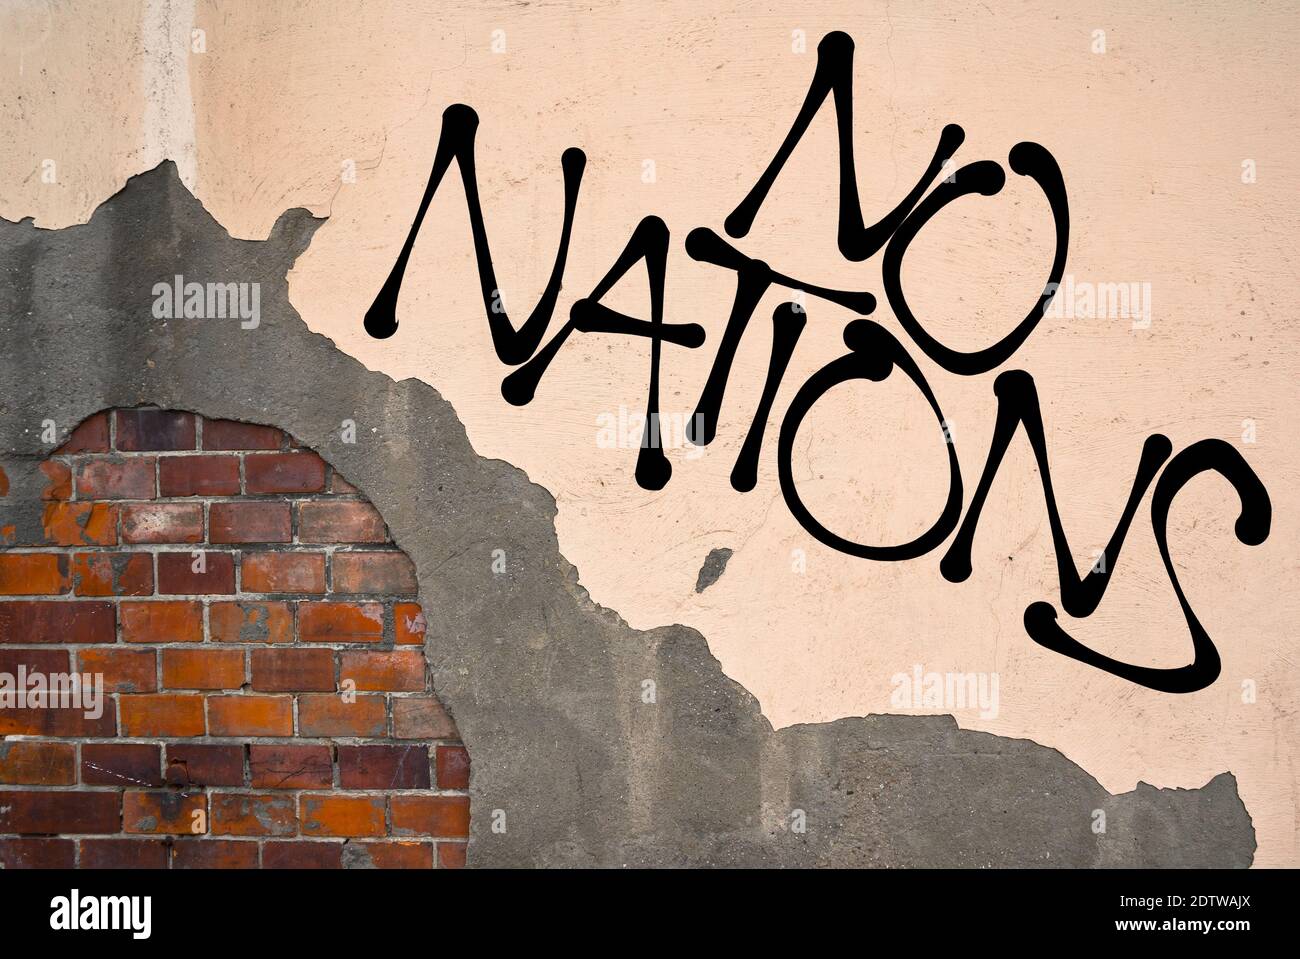 Graffiti scritti a mano Nessuna nazione spruzzata sul muro, estetica anarchica. Appello al multiculturalismo e all'abolizione del nazionalismo e dell'odio Foto Stock